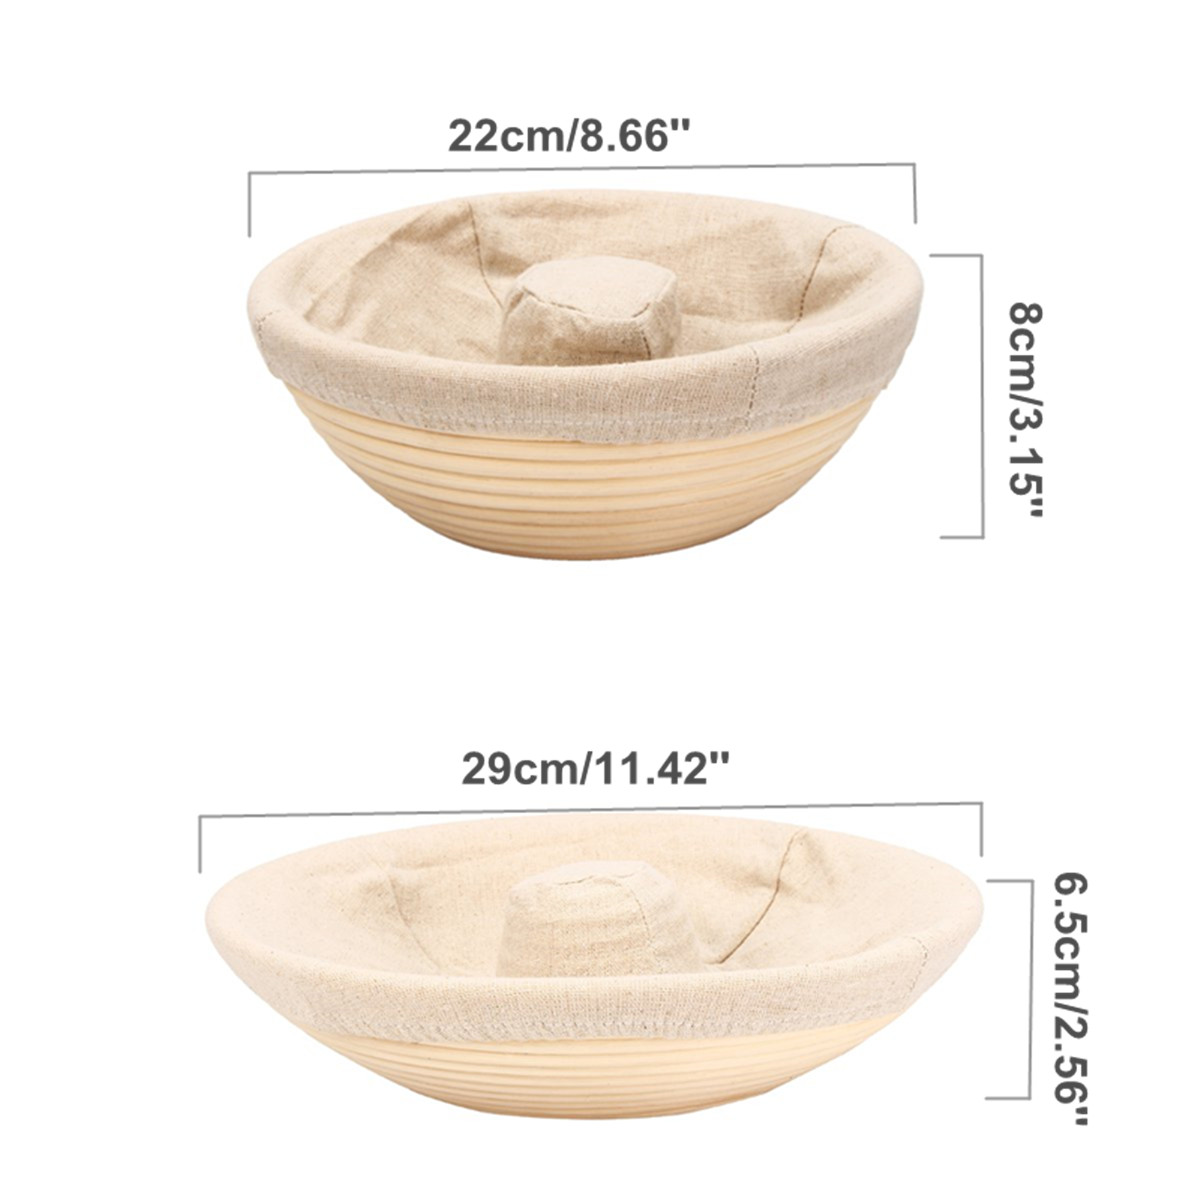 Handmade-Round-Oval-Banneton-Bortform-Rattan-Storage-Baskets-Bread-Dough-Proofing-Liner-1383037-8